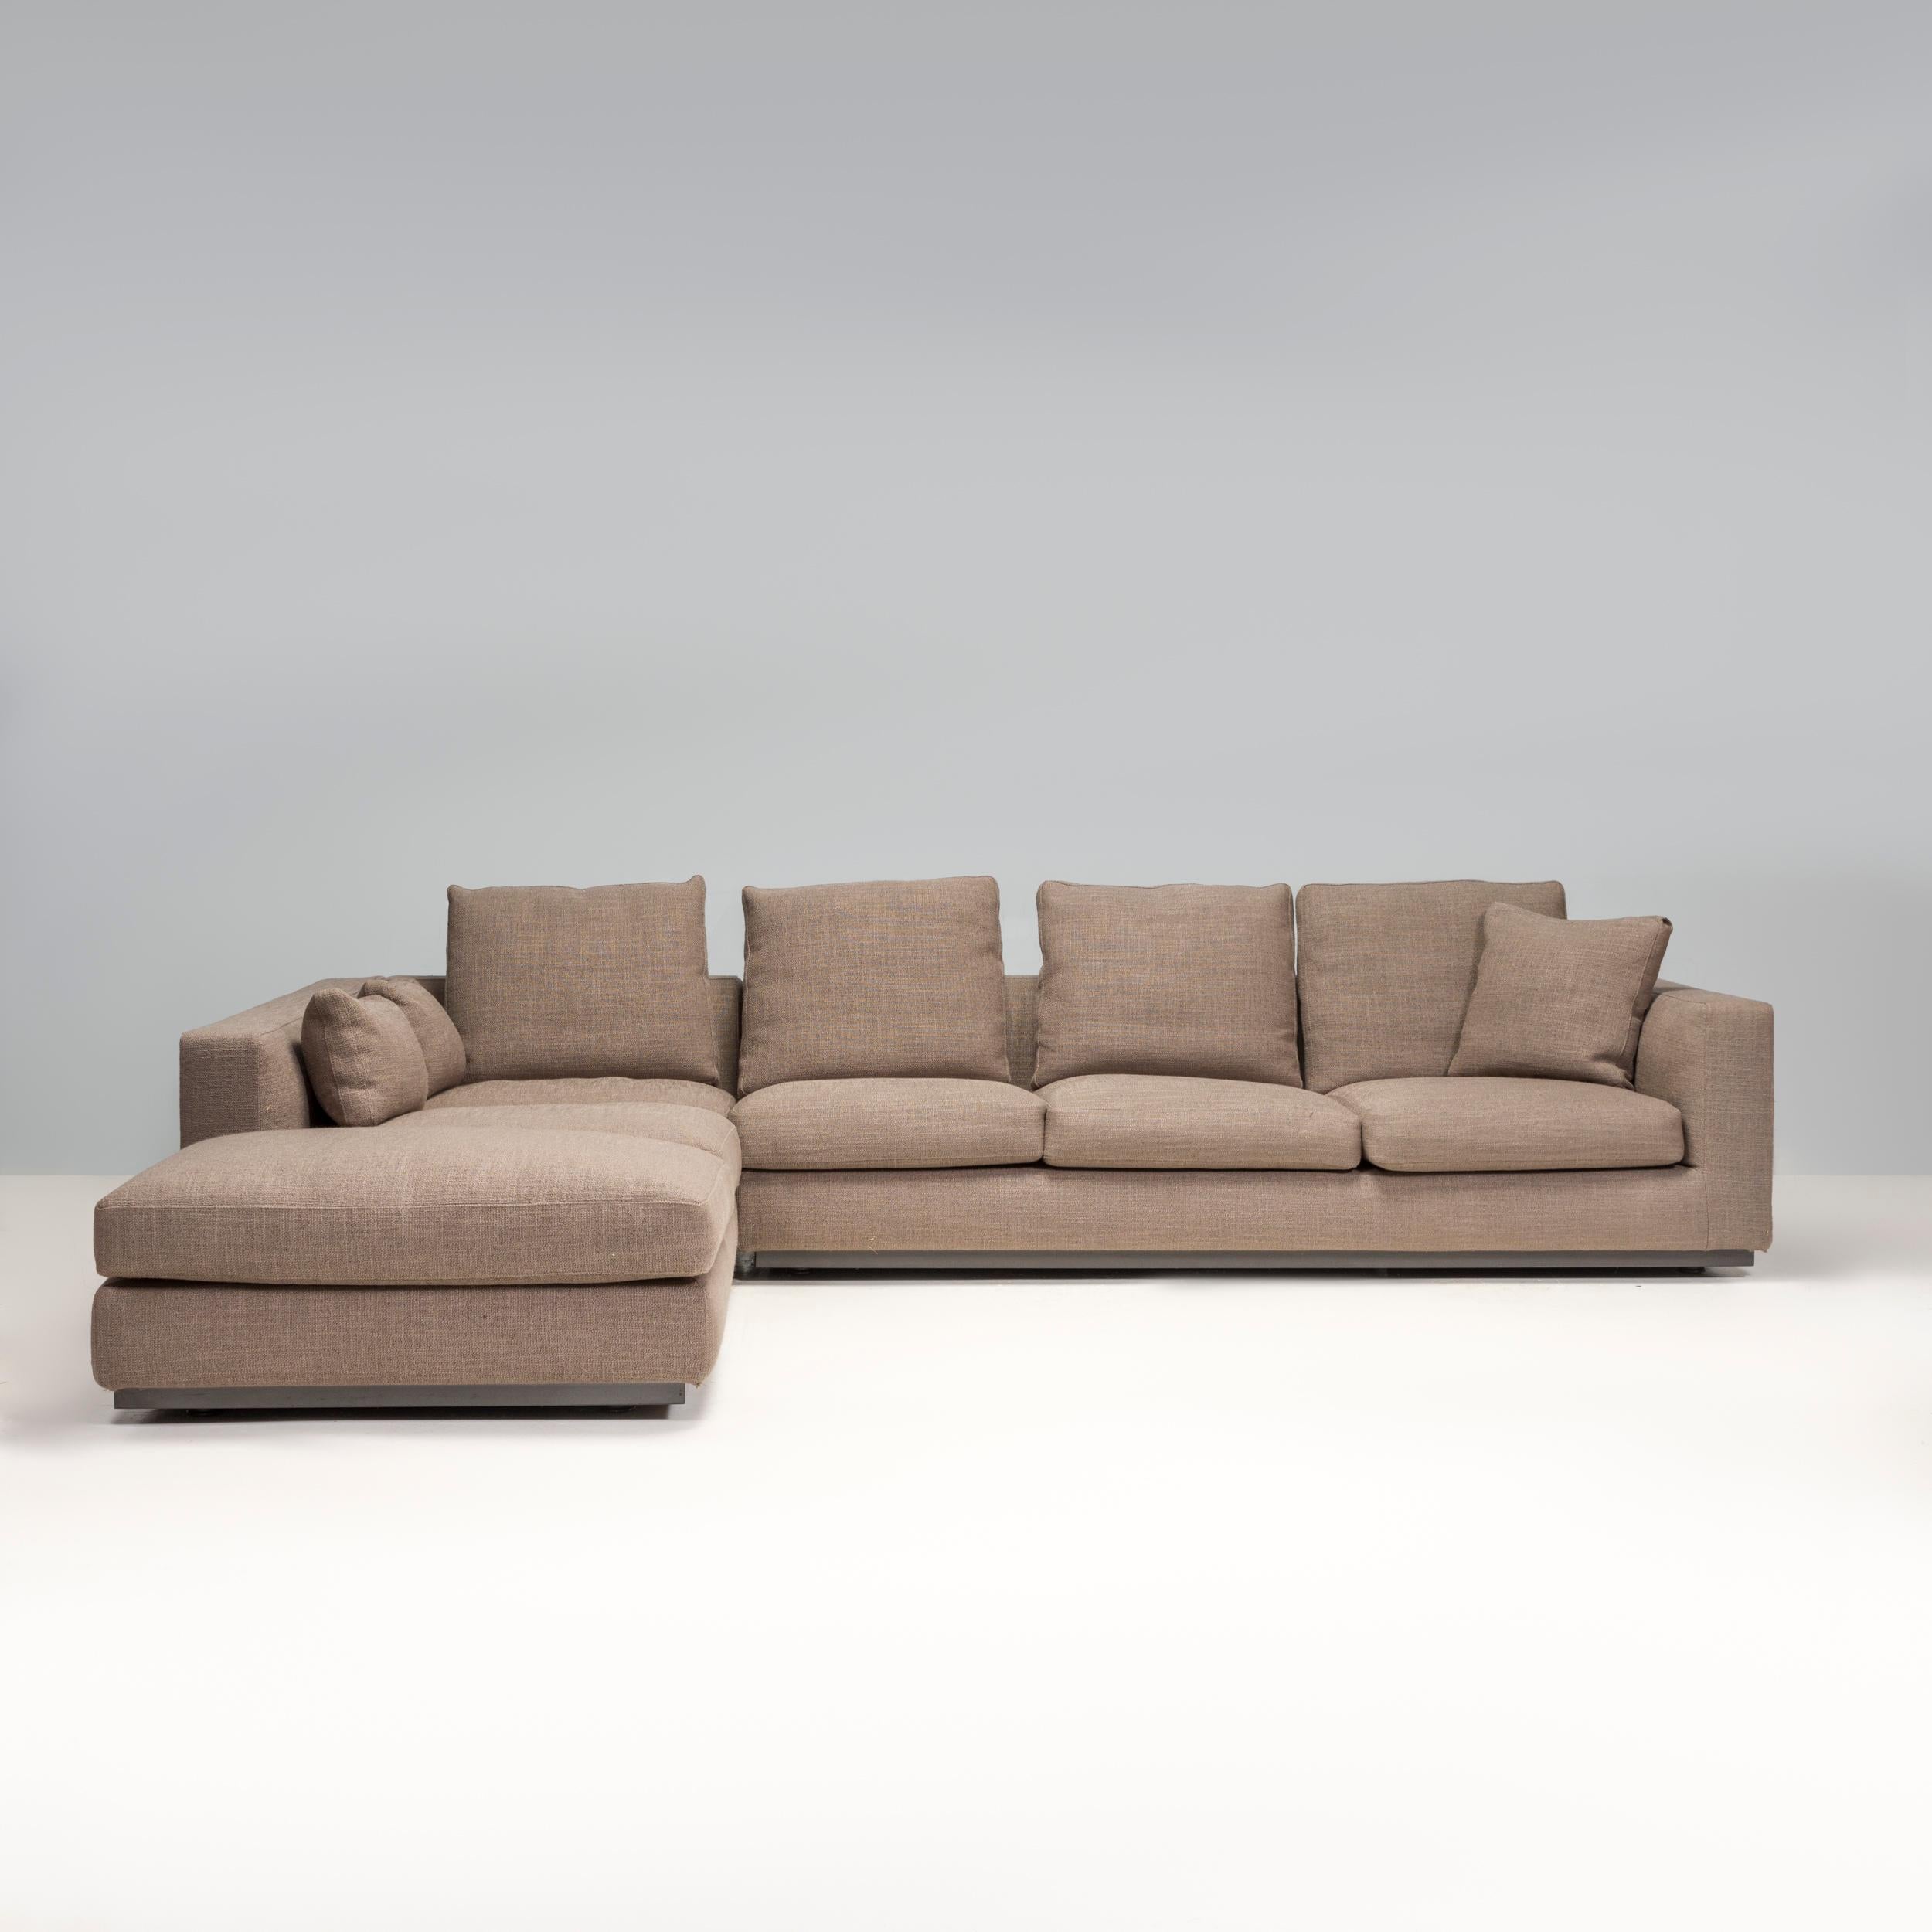 Conçu par Rodolfo Dordoni pour Minotti, le canapé Andersen Line fait partie de la Collection Sensitive Tempo 2010 et incarne le design italien intemporel.

Entièrement revêtu de tissu gris, le canapé présente une silhouette linéaire moderne reposant